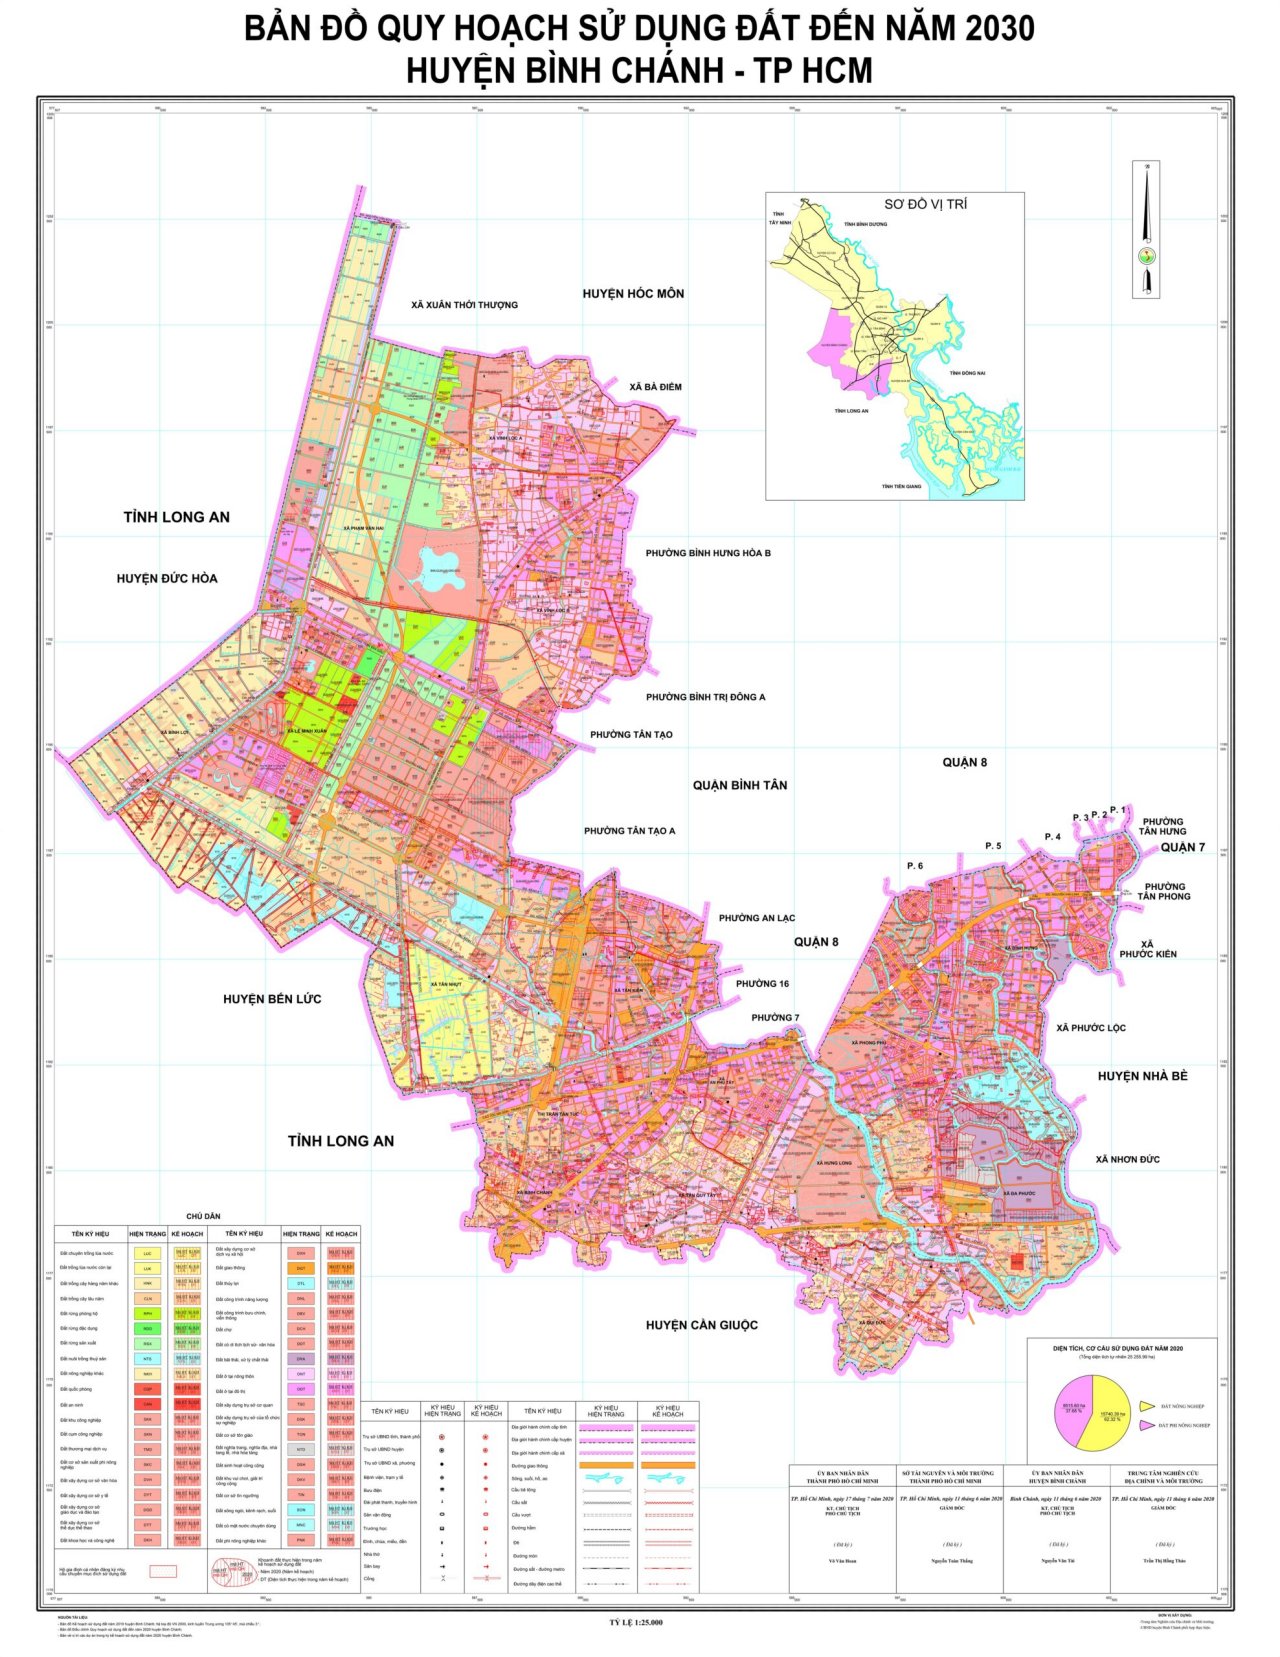 Bản đồ Bình Chánh về quy hoạch sử dụng đất đến năm 2030